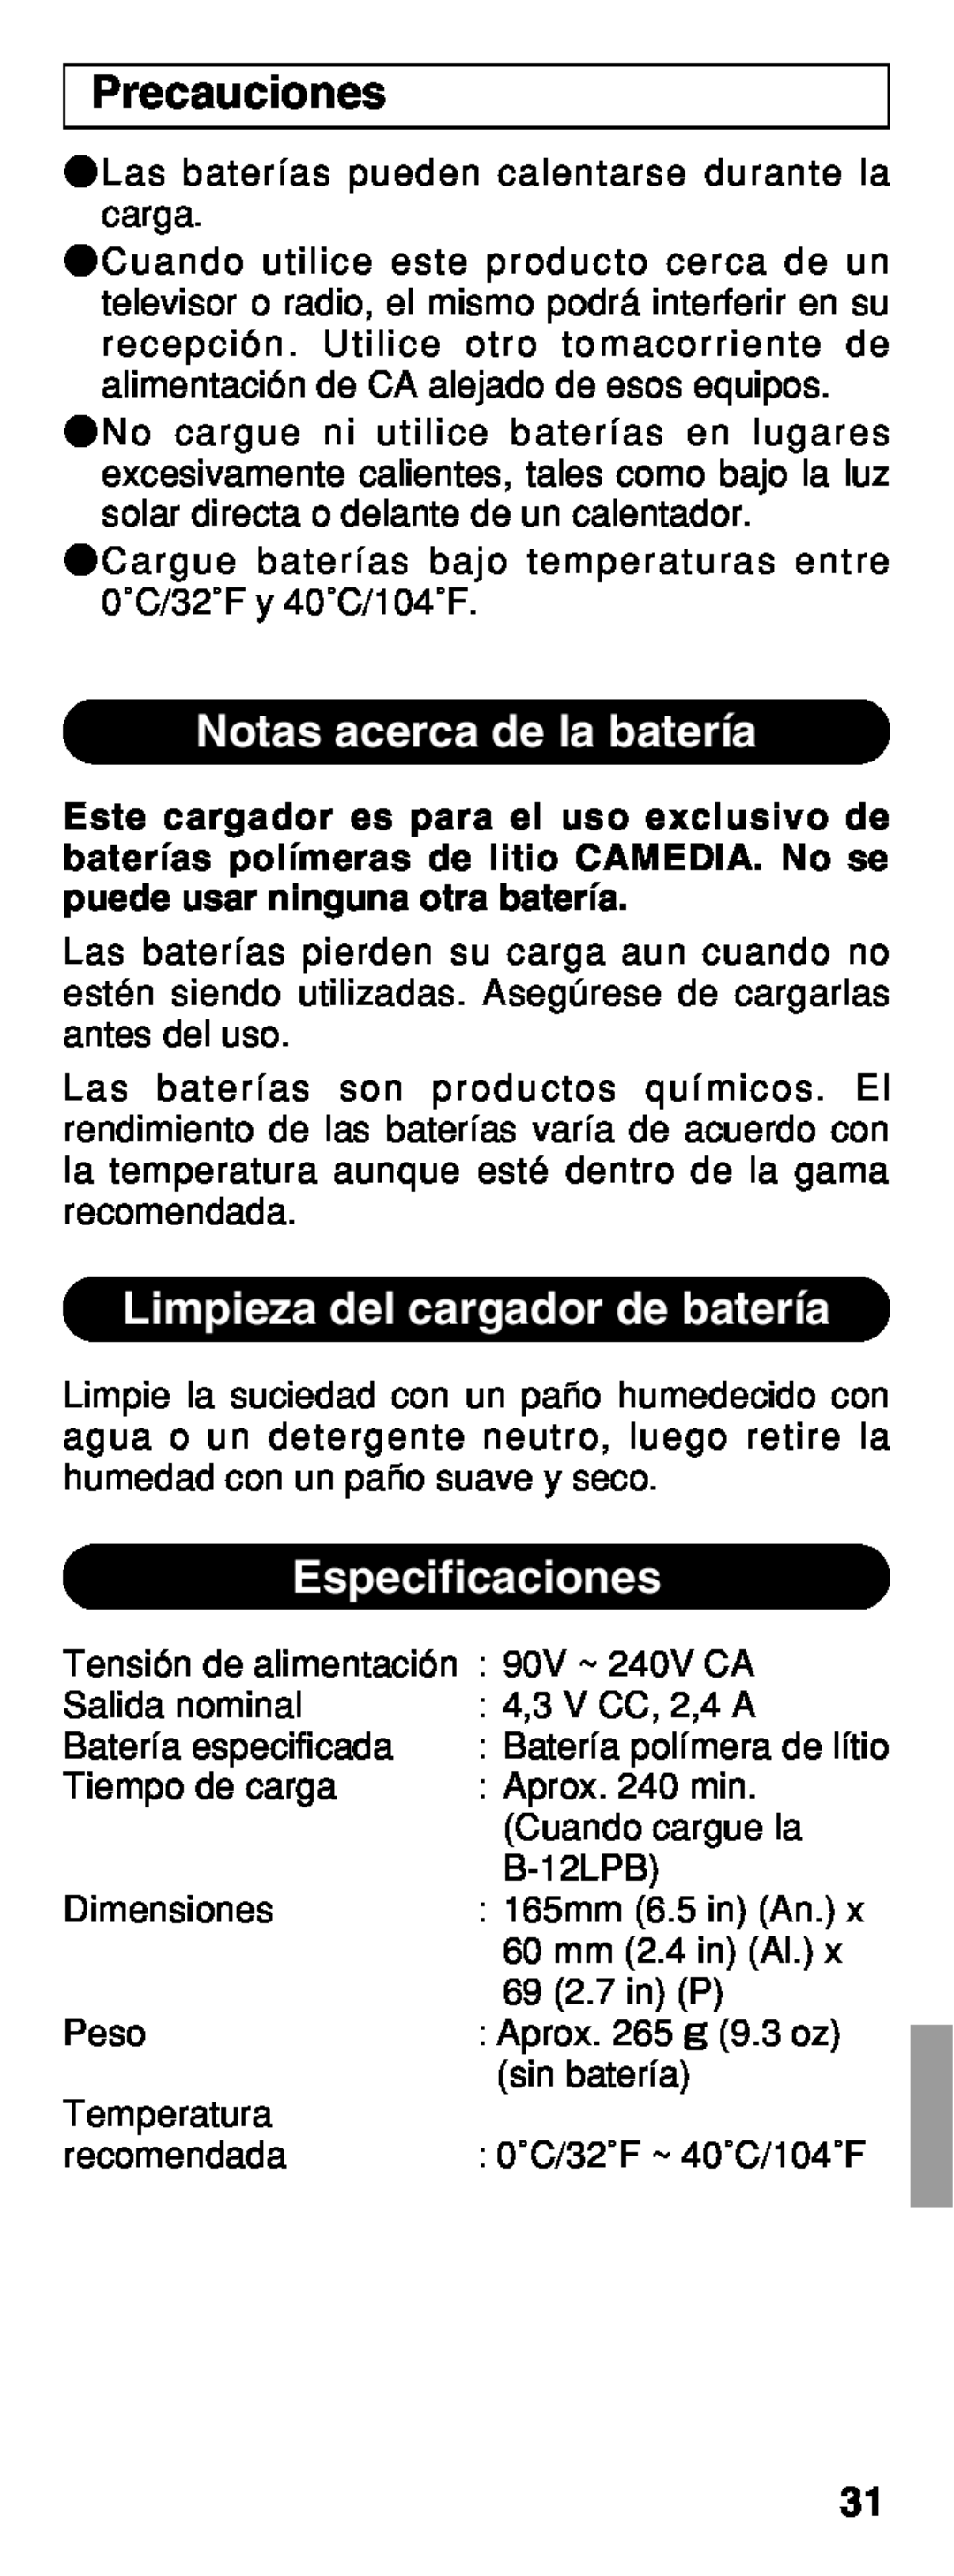 Olympus B-20 LPC Precauciones, Notas acerca de la batería, Limpieza del cargador de batería, Especificaciones 